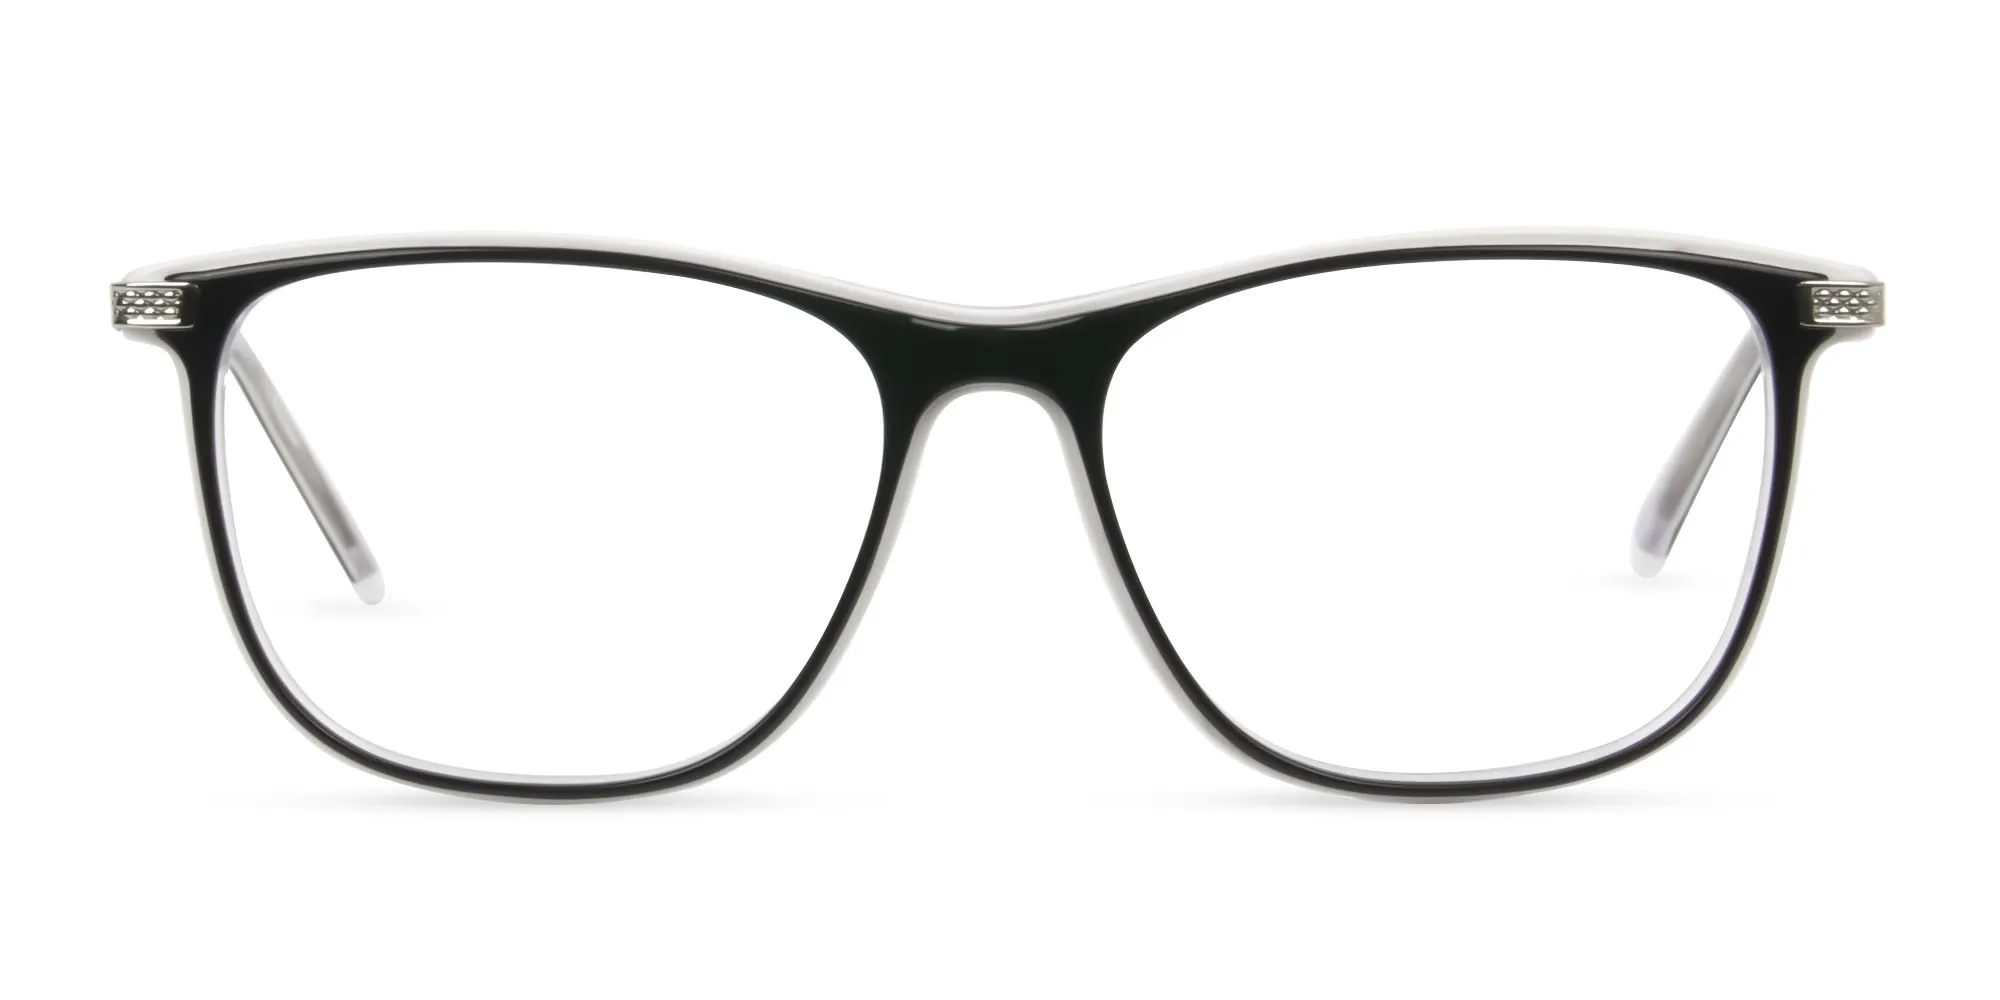 Black-and-White-Rectangular-Glasses-2